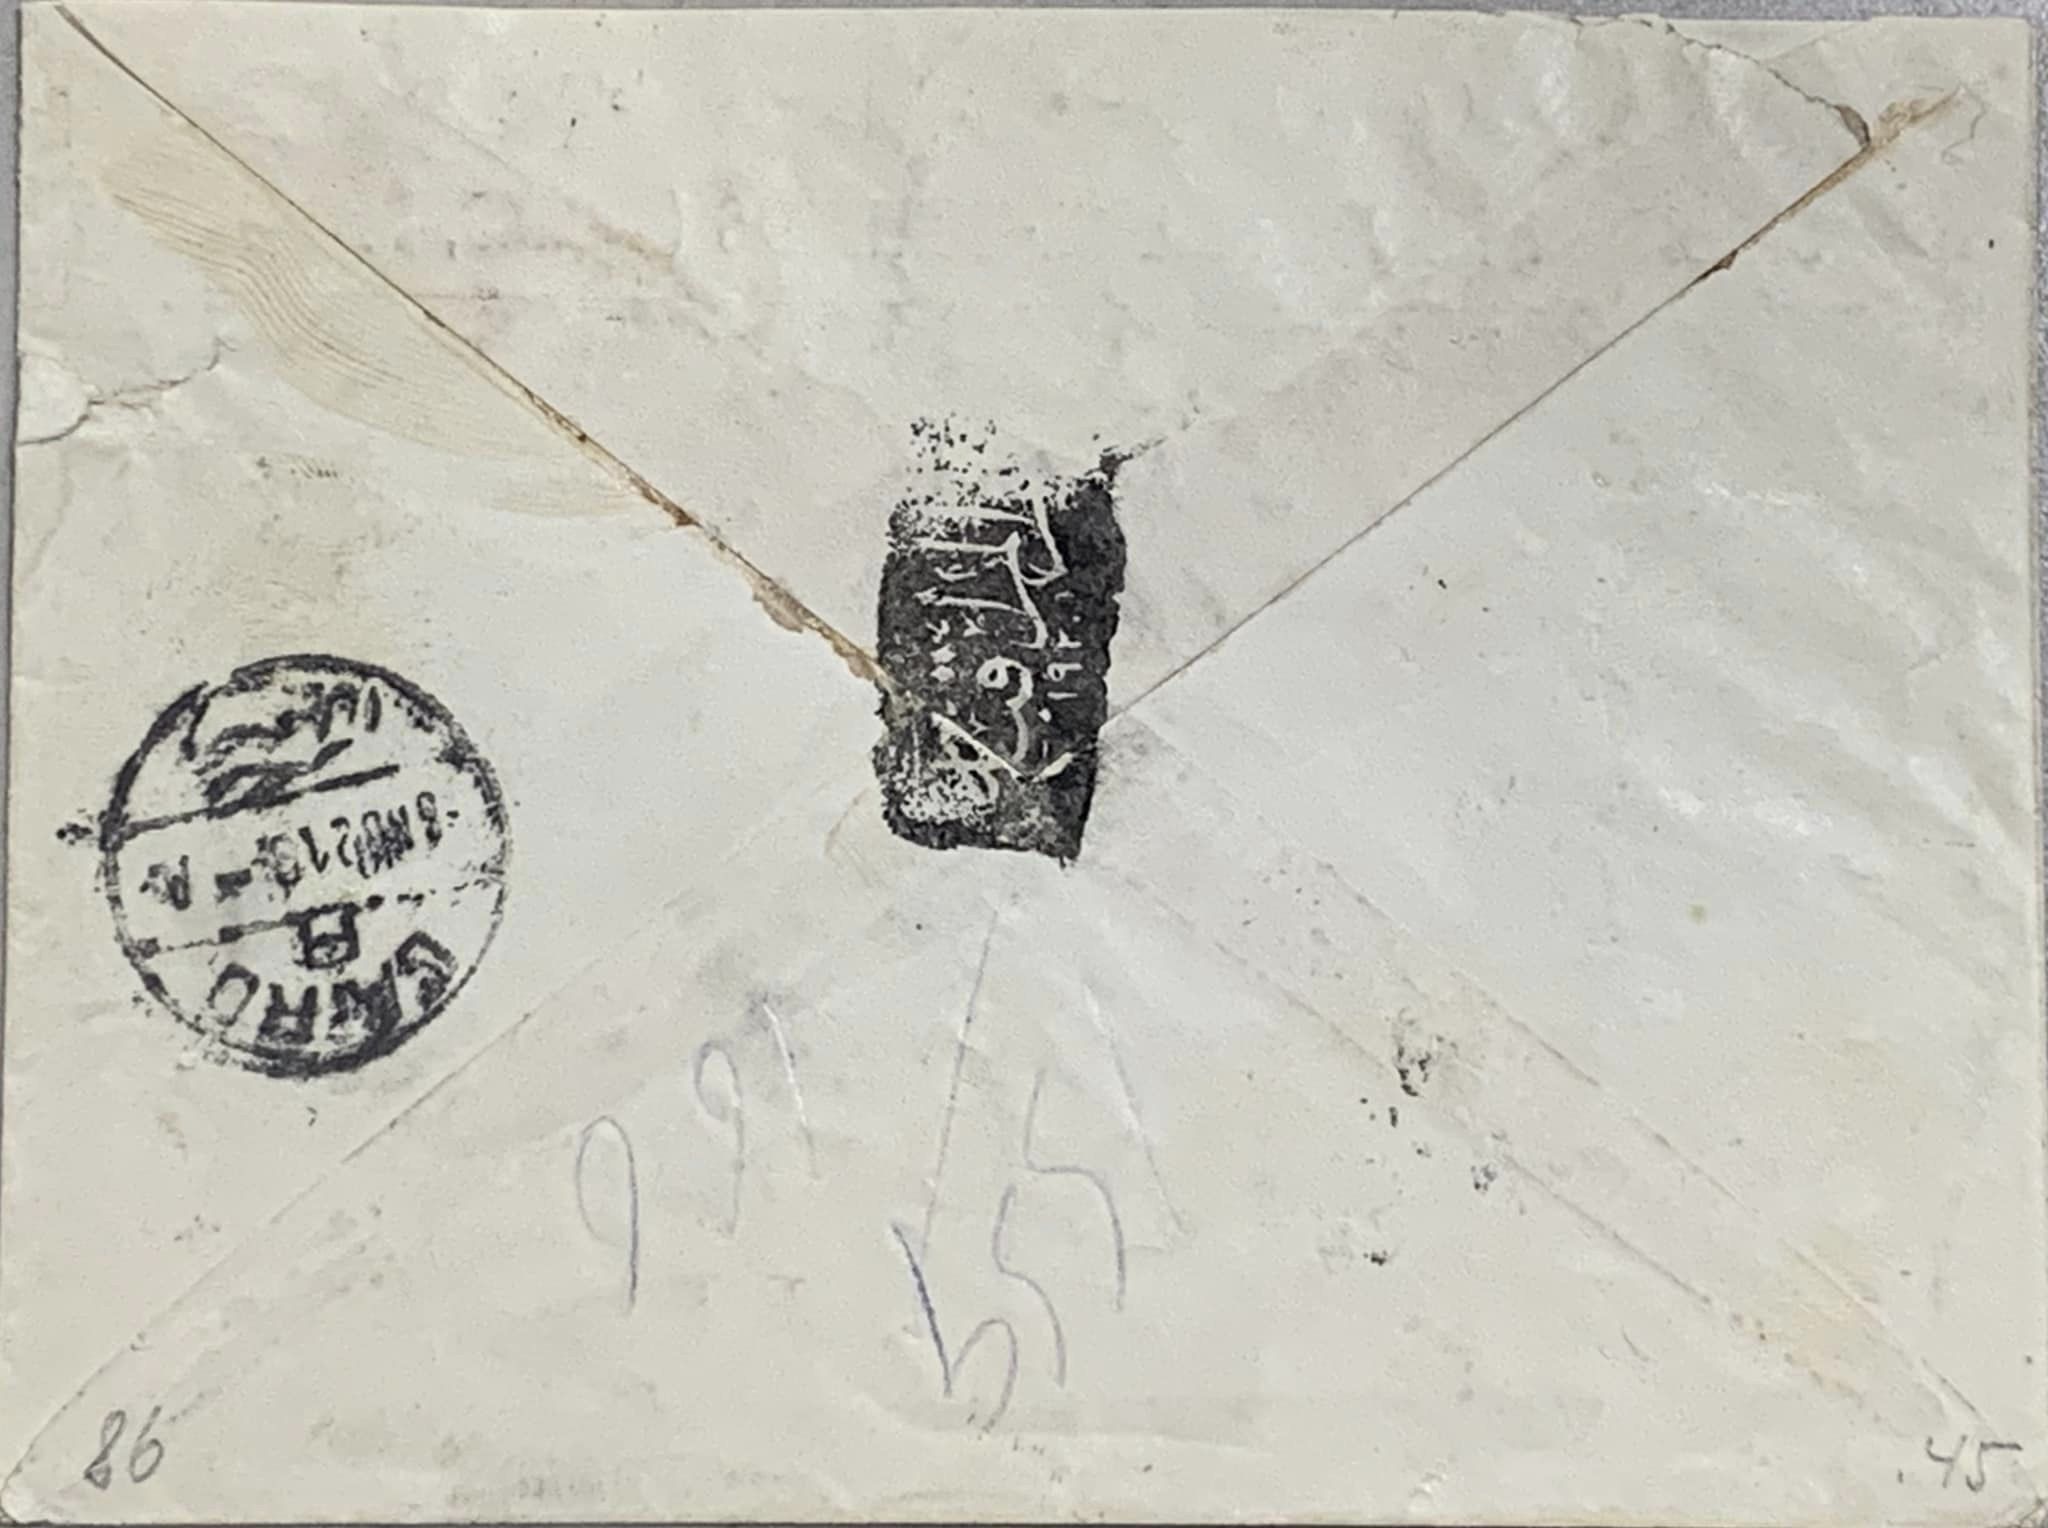 التاريخ السوري المعاصر - غلاف رسالة من محمد كردعلي إلى اخيه محمود في القاهرة عام 1921م